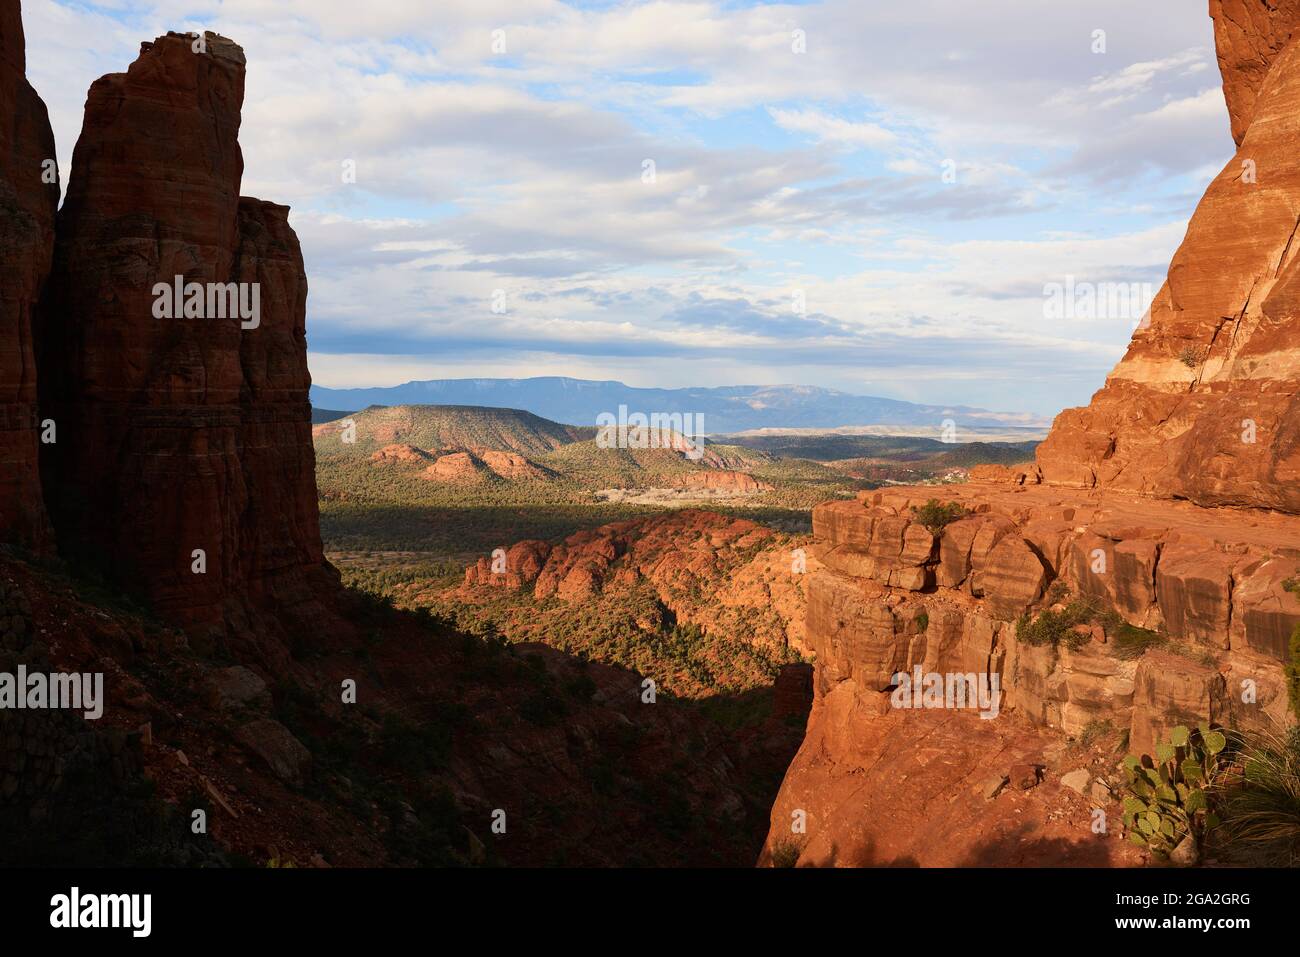 Weitläufige Weitwinkelansicht der Sedona-Landschaft mit roten Felswänden und Bergen über dem Talboden; Sedona, Arizona, Vereinigte Staaten von Amerika Stockfoto